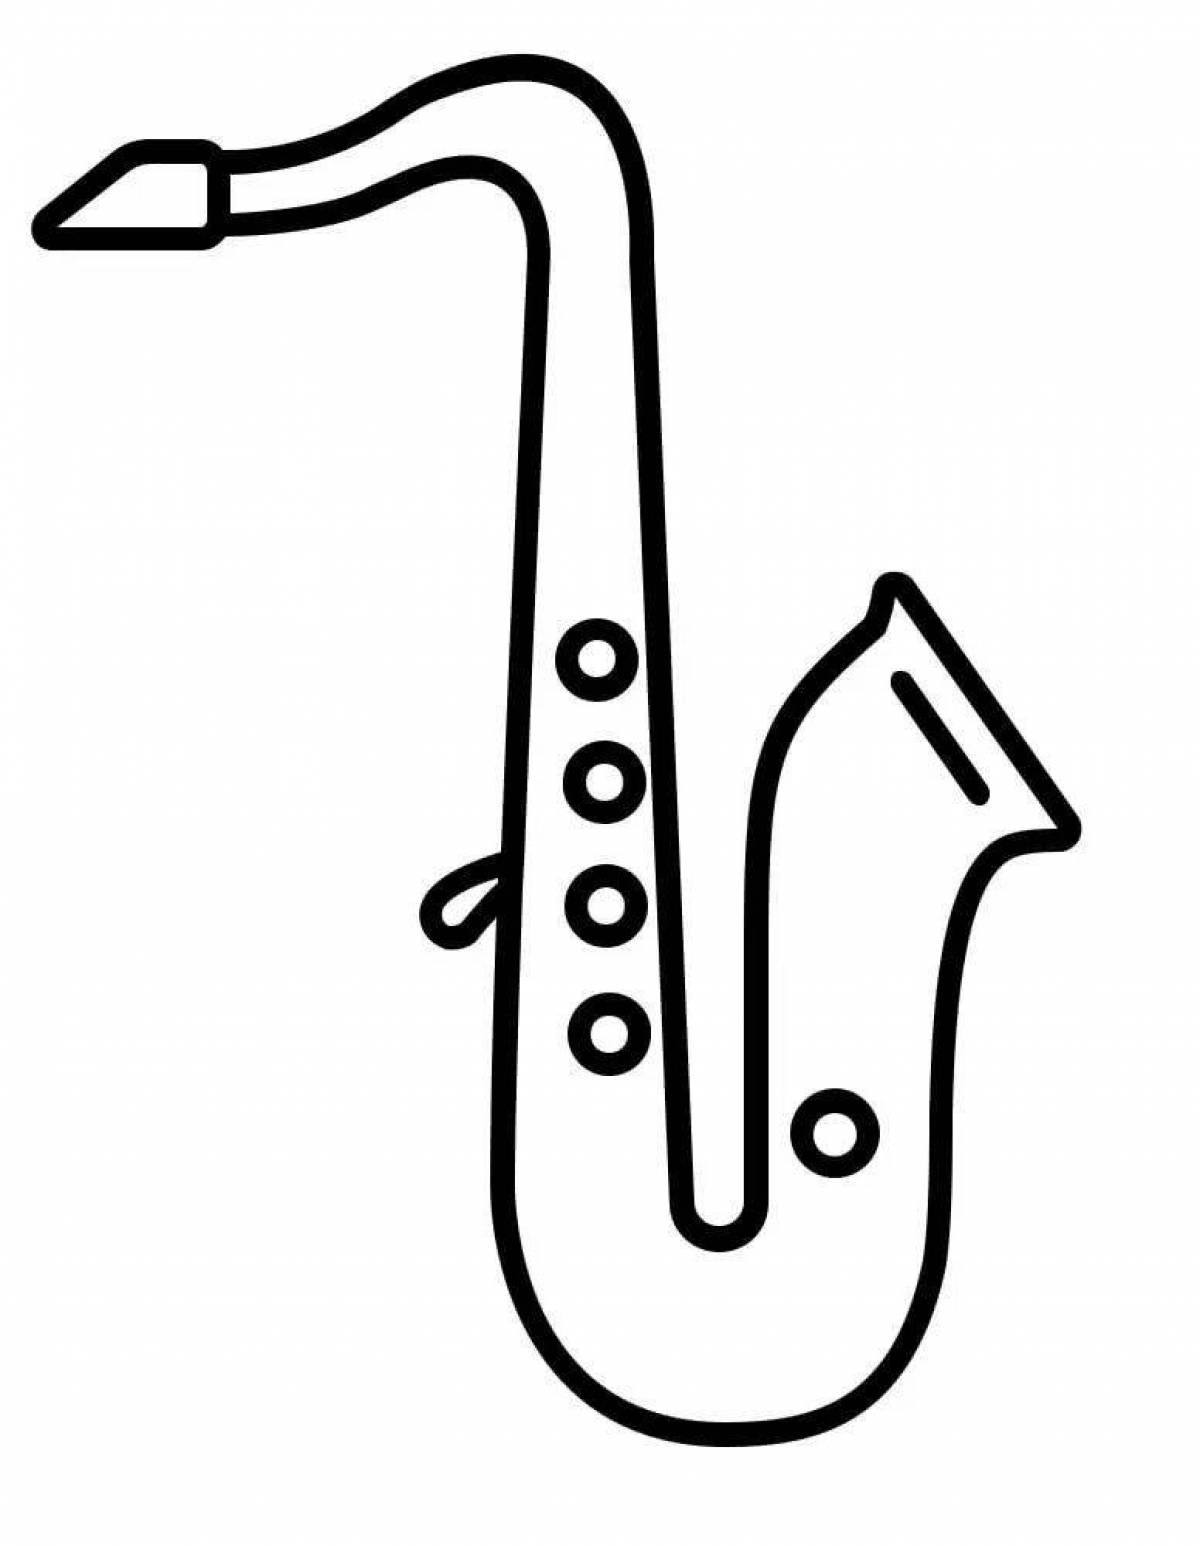 Мышонок саксофонист 100х150 Раскраска картина по номерам на холсте Z-AB443-100x150